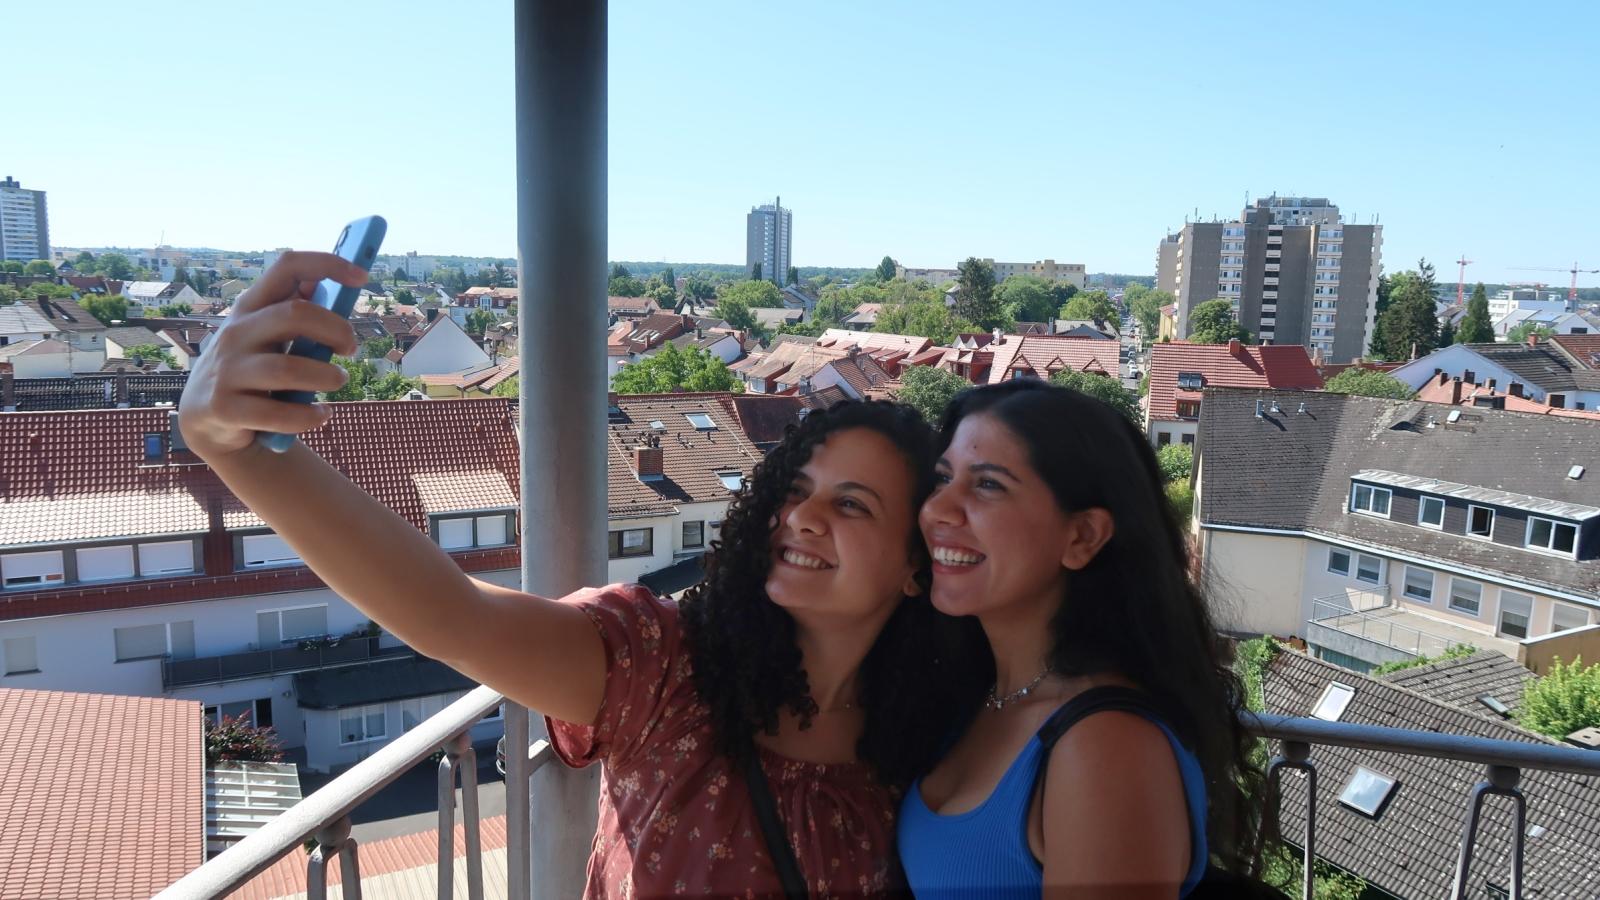 Zwei junge Frauen fotografieren sich selbst, im Hintergrund ist der Ort Neu-Isenburg zu sehen.